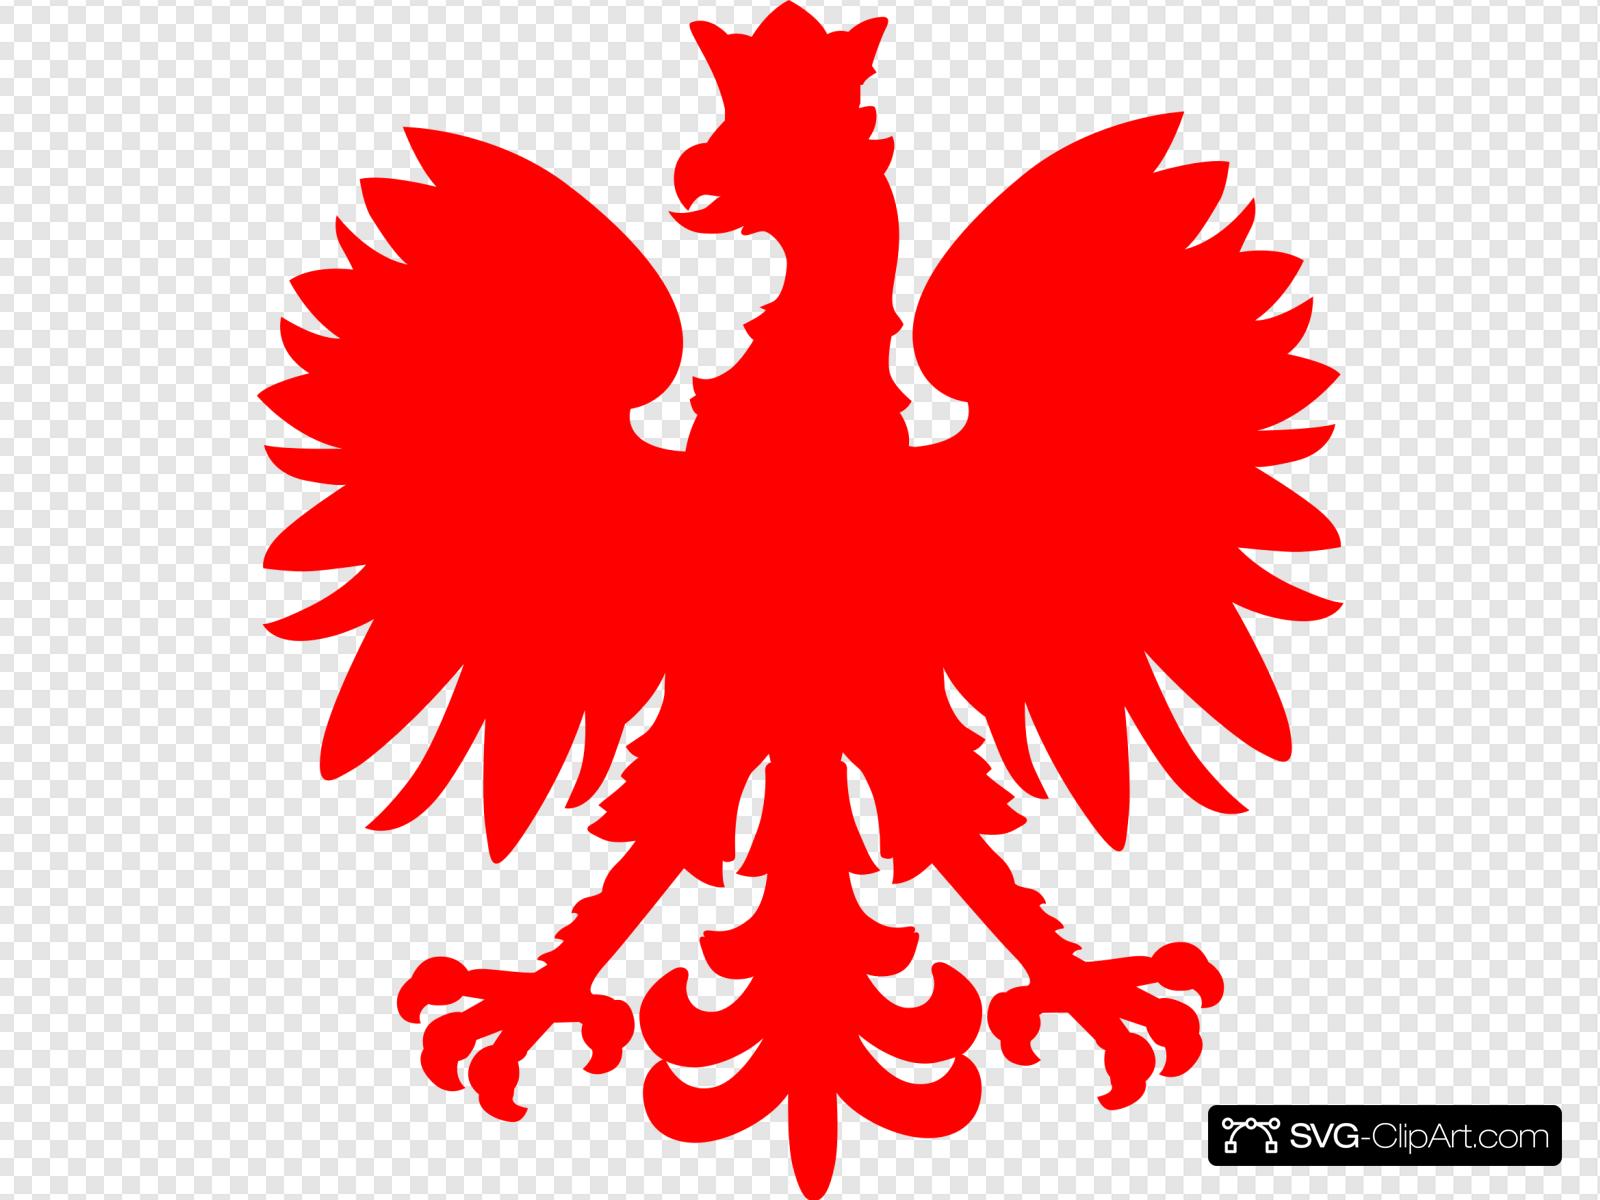 Red Polish Falcon Clip art, Icon and SVG